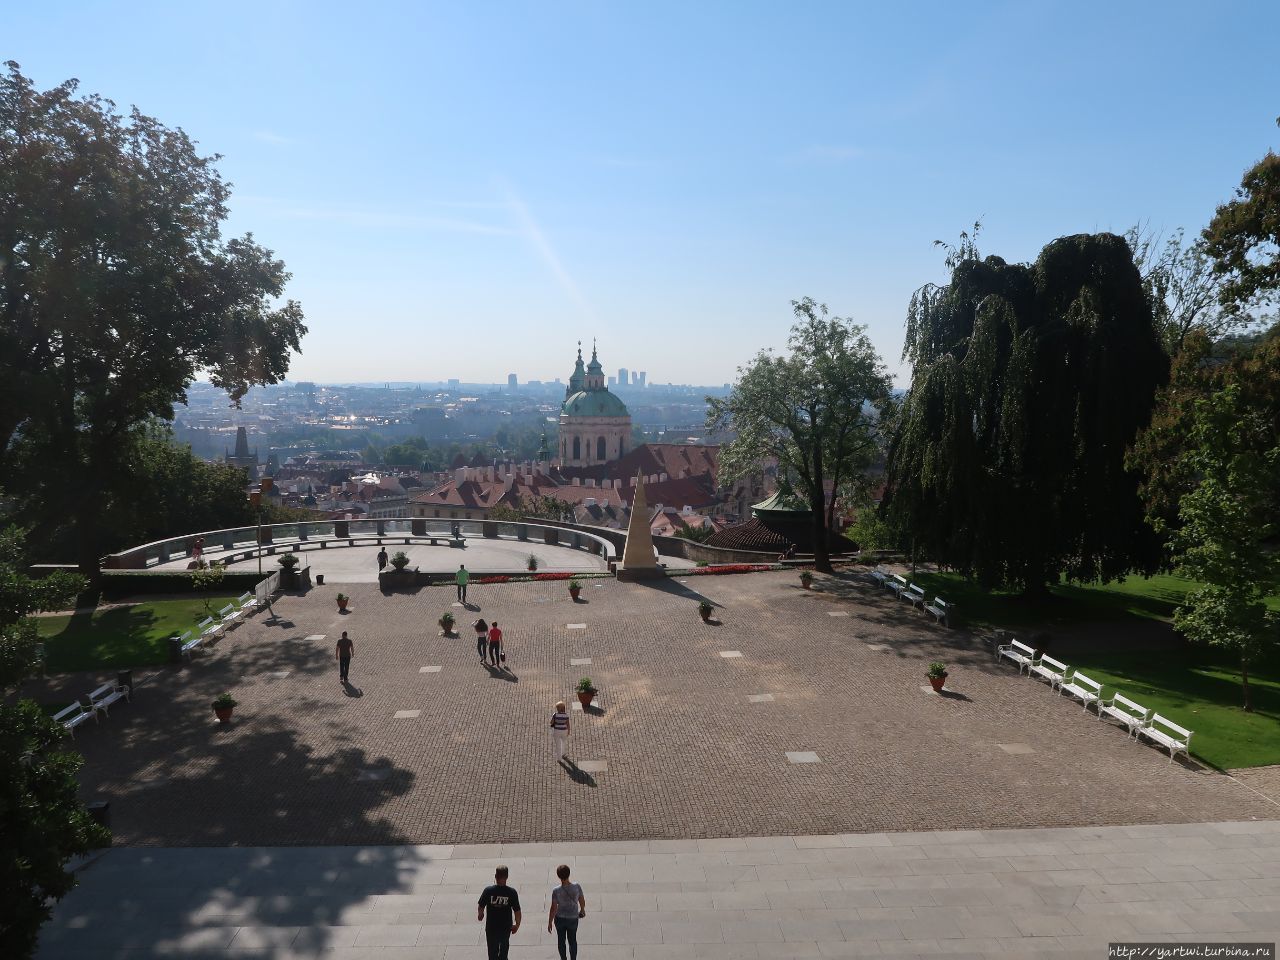 На выходе из Пражского Града, рядом с крепостной стеной, находится смотровая площадка, открывающая великолепный вид на Прагу. Фотографируем все открывающиеся перед нами панорамы. Теперь наш путь лежит через Райский сад к воротам Матиаша. Прага, Чехия